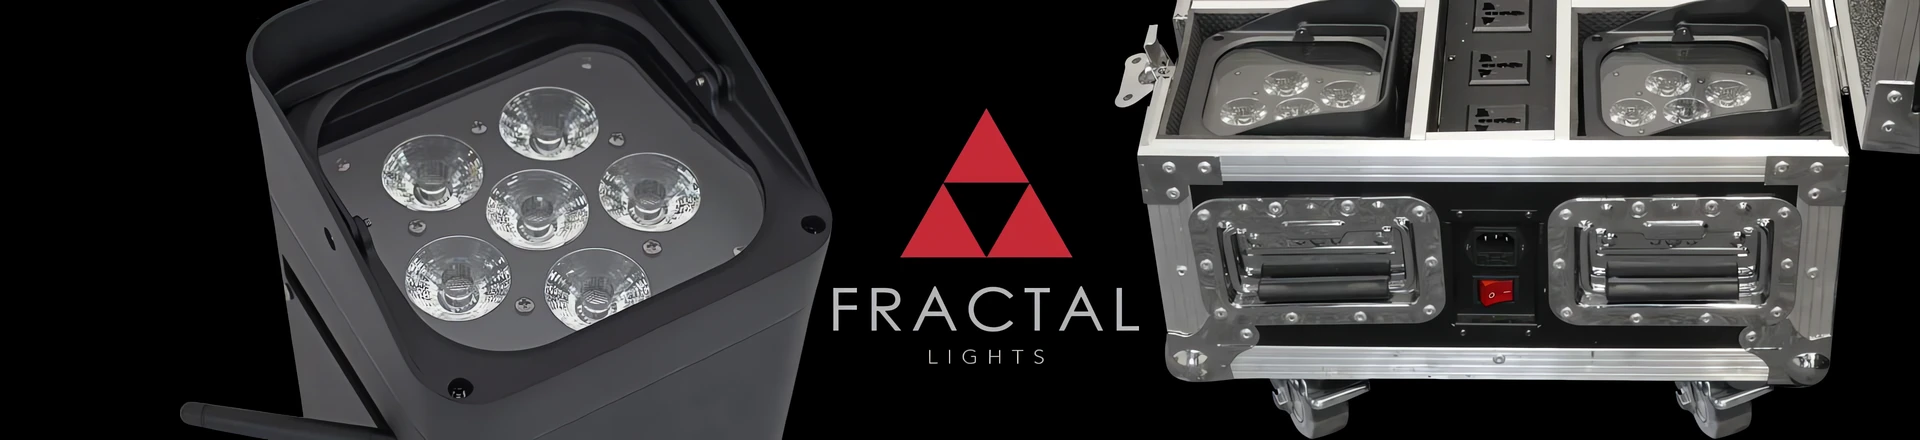 Pomysł na oświetlenie niewielkiego eventu lub architektury (Fractal PAR LED)